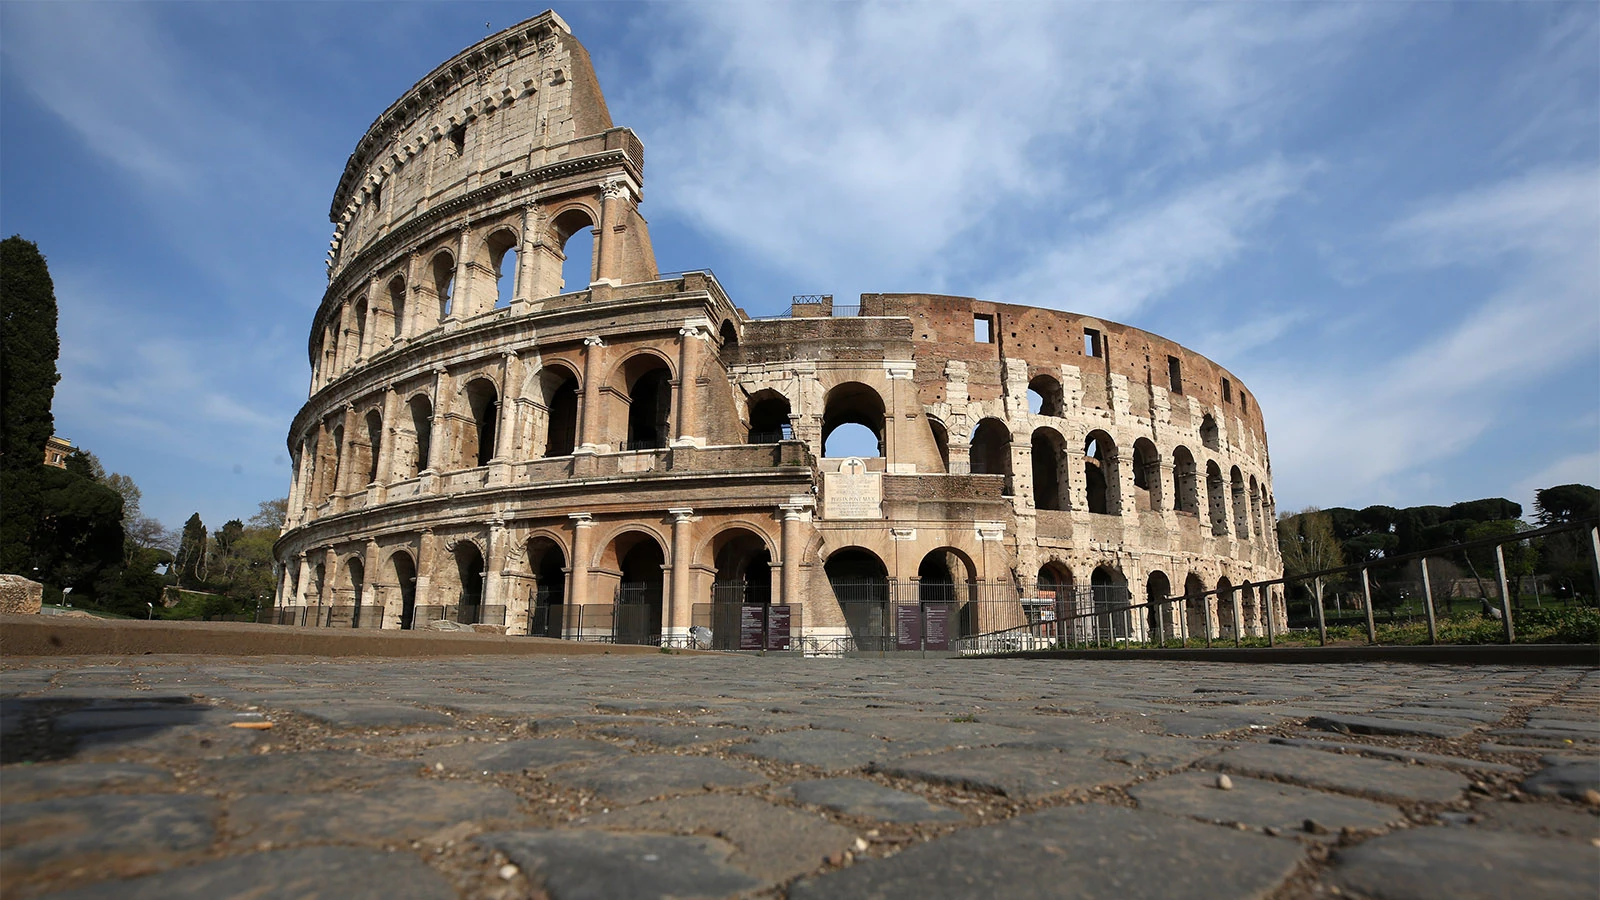 Колизей — одна из главных достопримечательностей Италии, построенная в I в. н. э. в виде амфитеатра